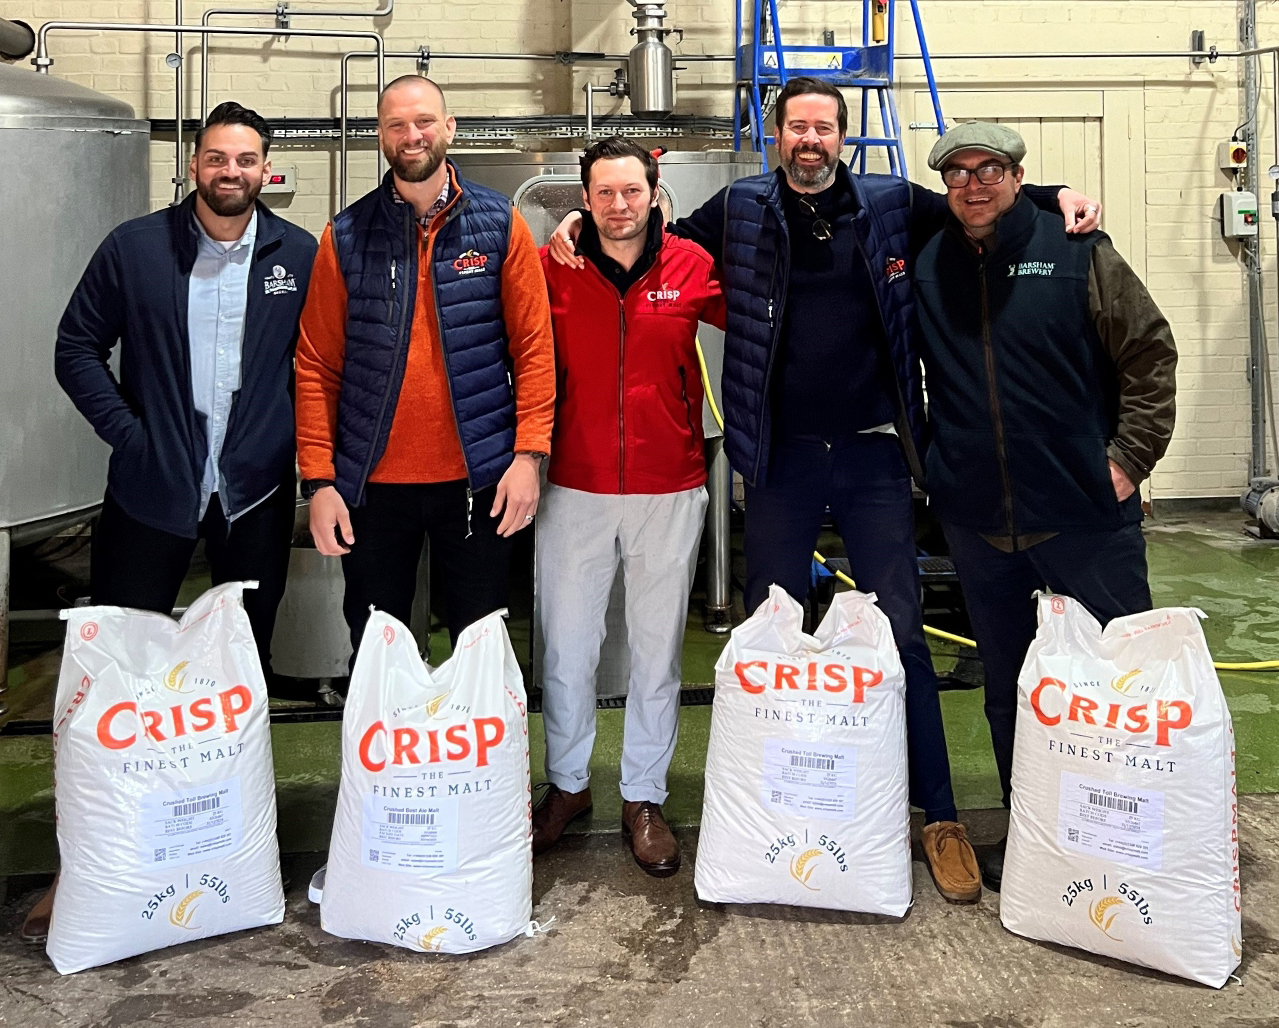 Group of men pose in front of Crisp Malt branded sacks of malt